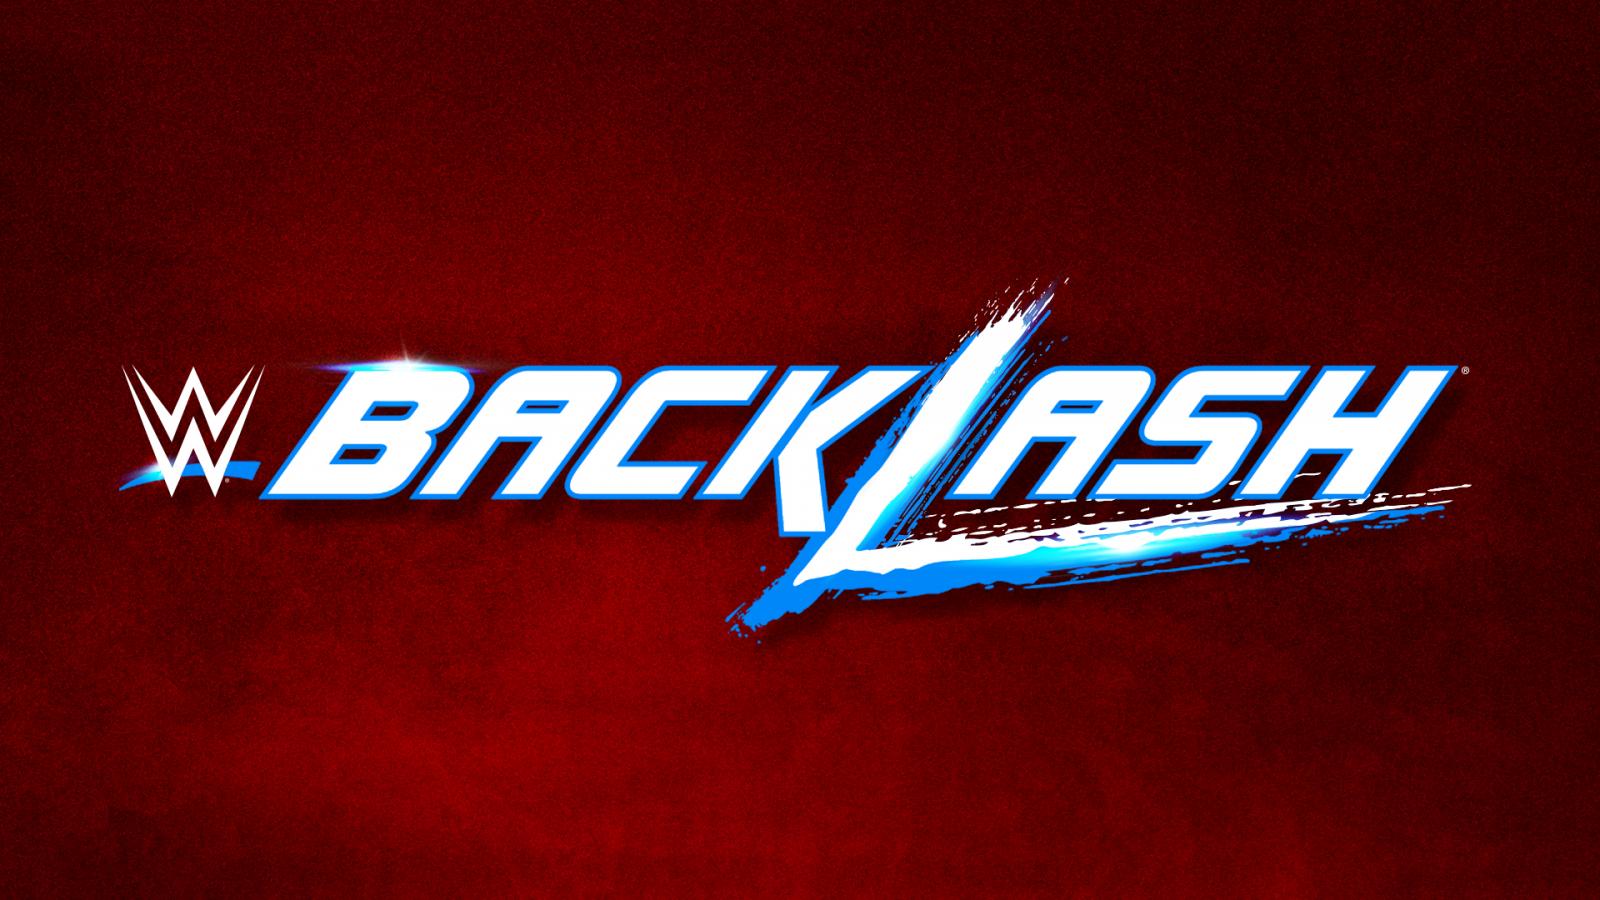 WWE Backlash 2017 